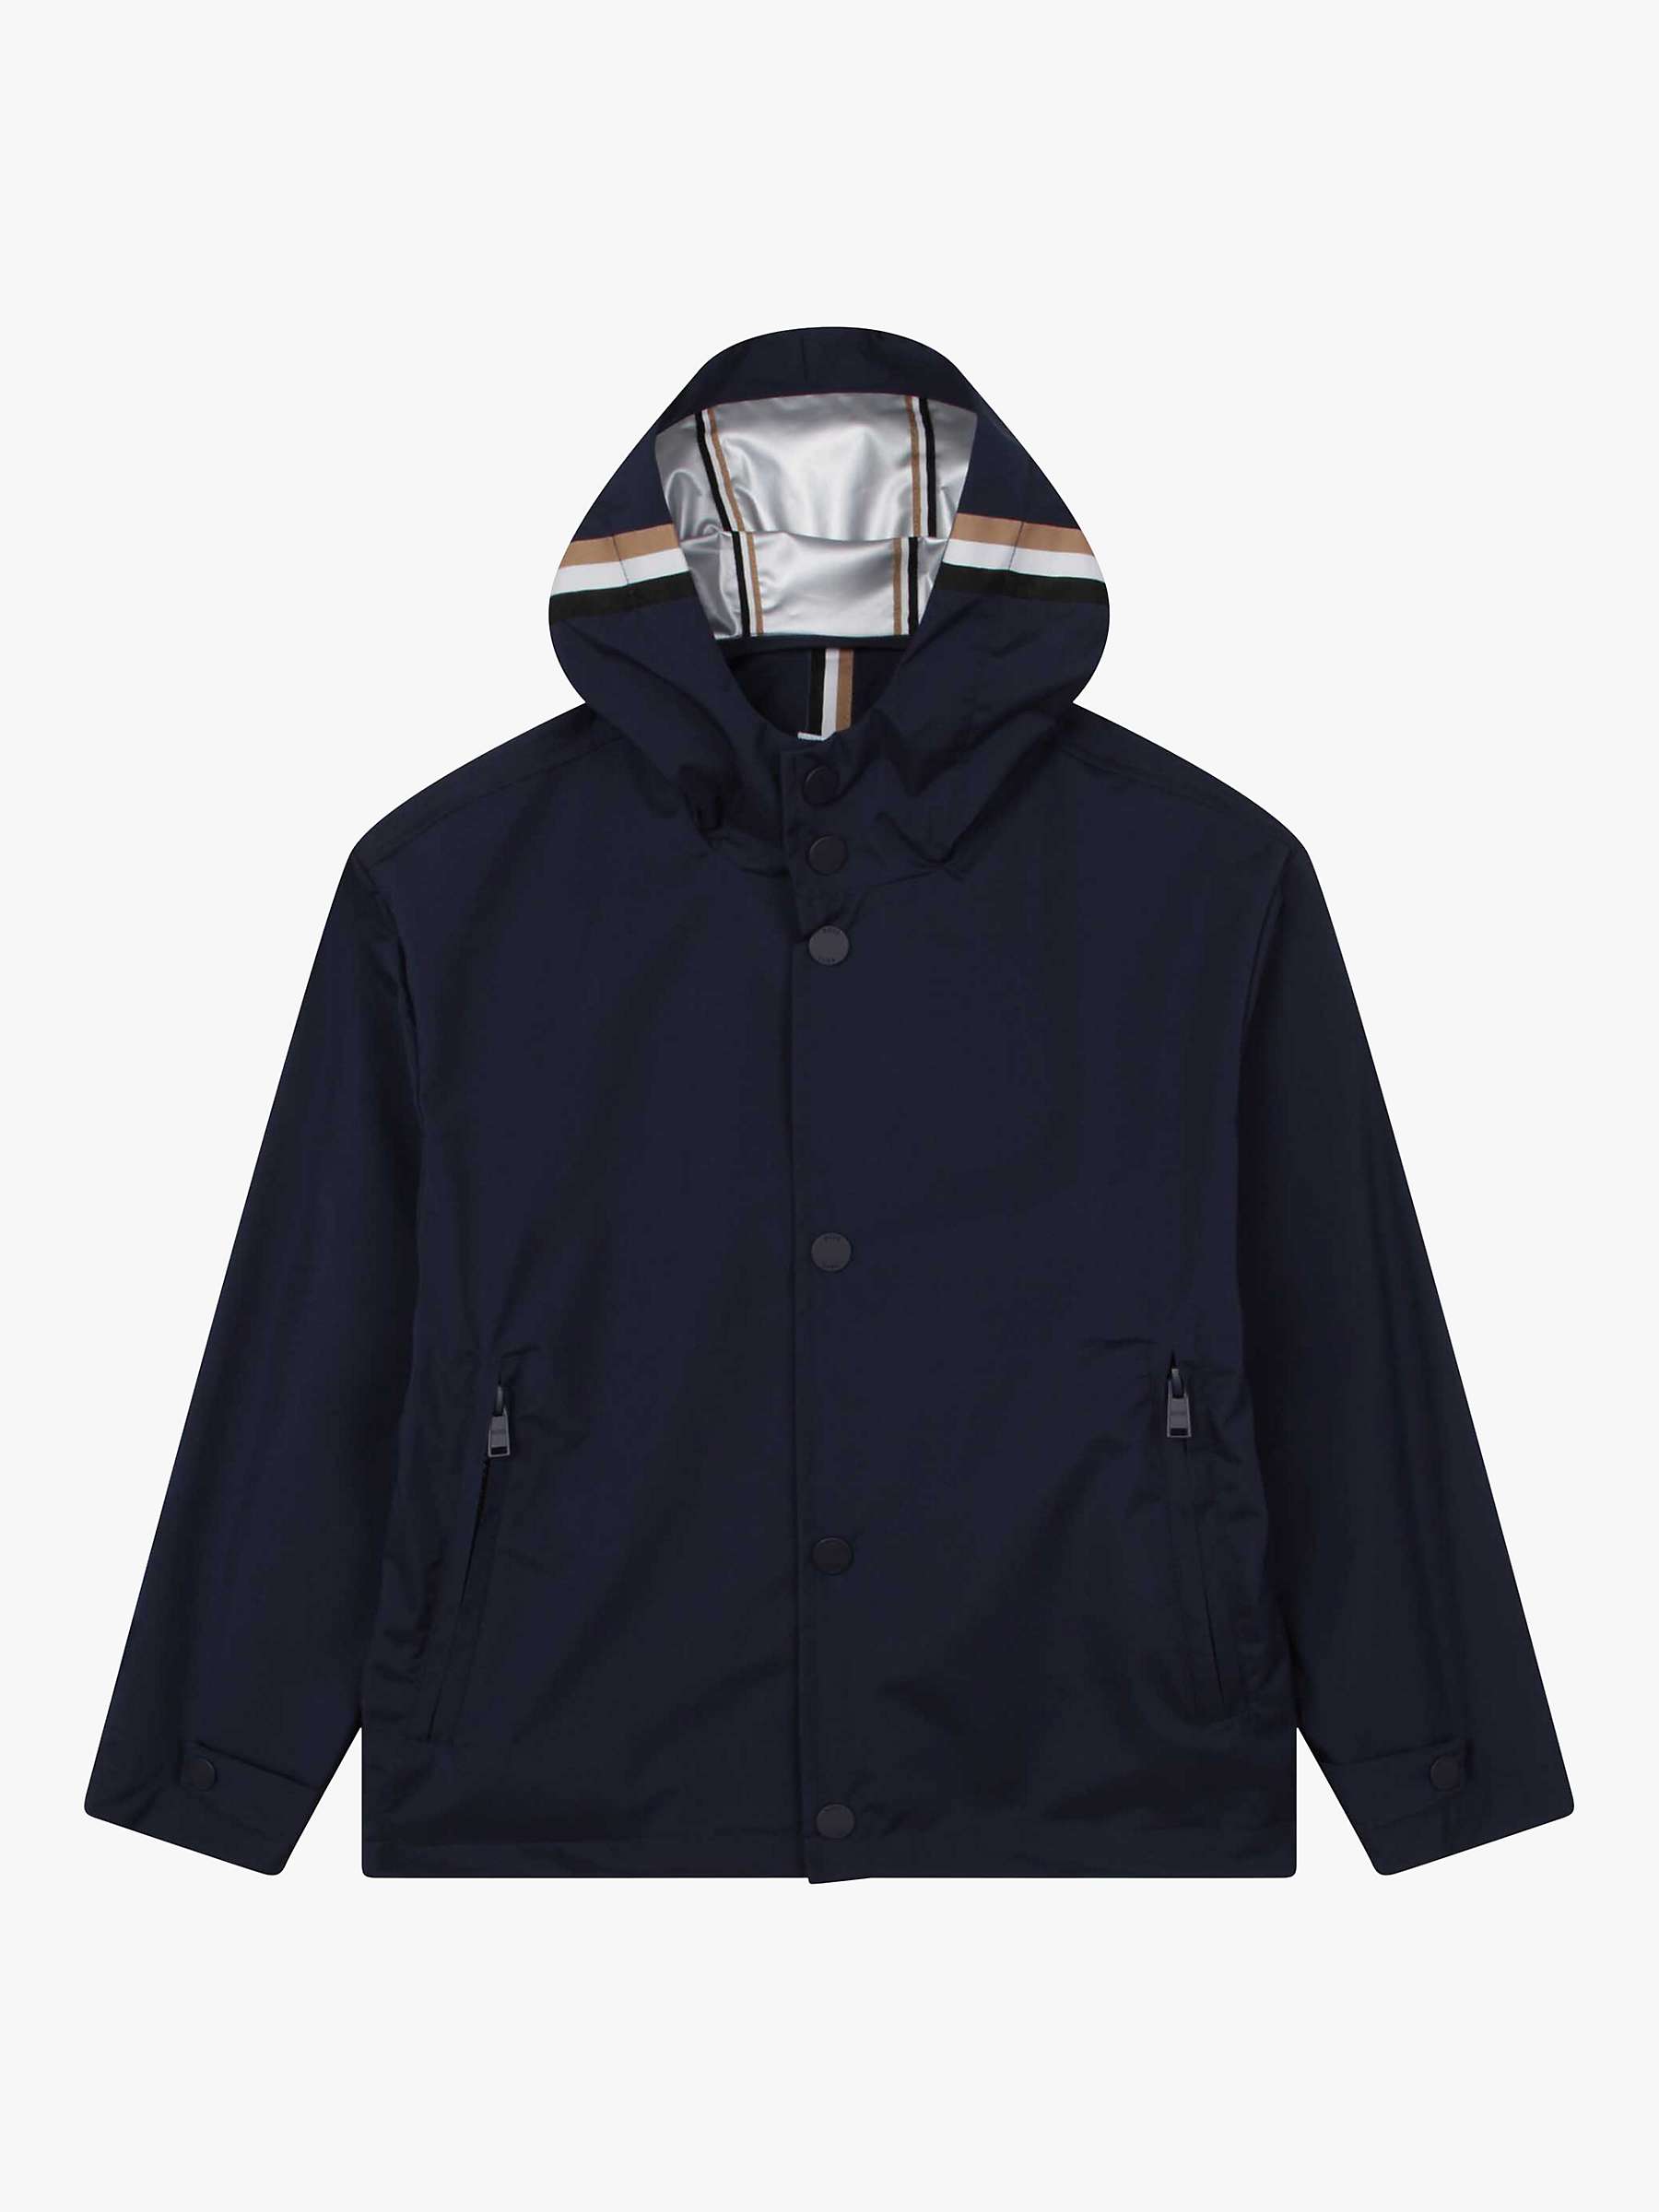 Buy BOSS Kids' Hooded Windbreaker Jacket, Navy Online at johnlewis.com